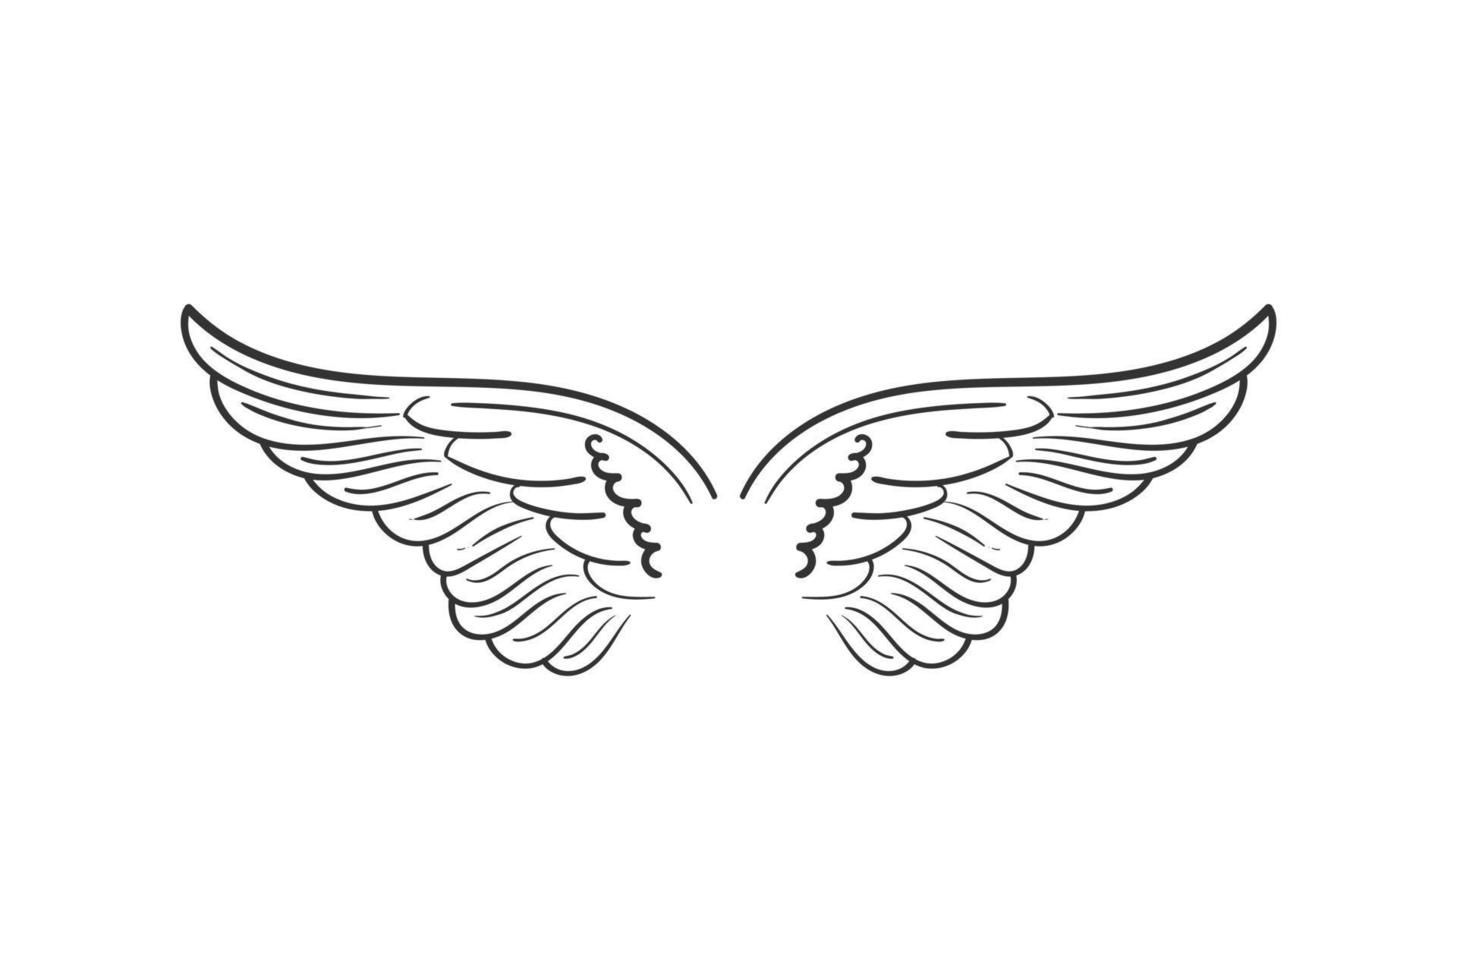 vintage diffusione angelo o aquila falco falco colomba piccione ali di uccello illustrazione logo disegno vettoriale